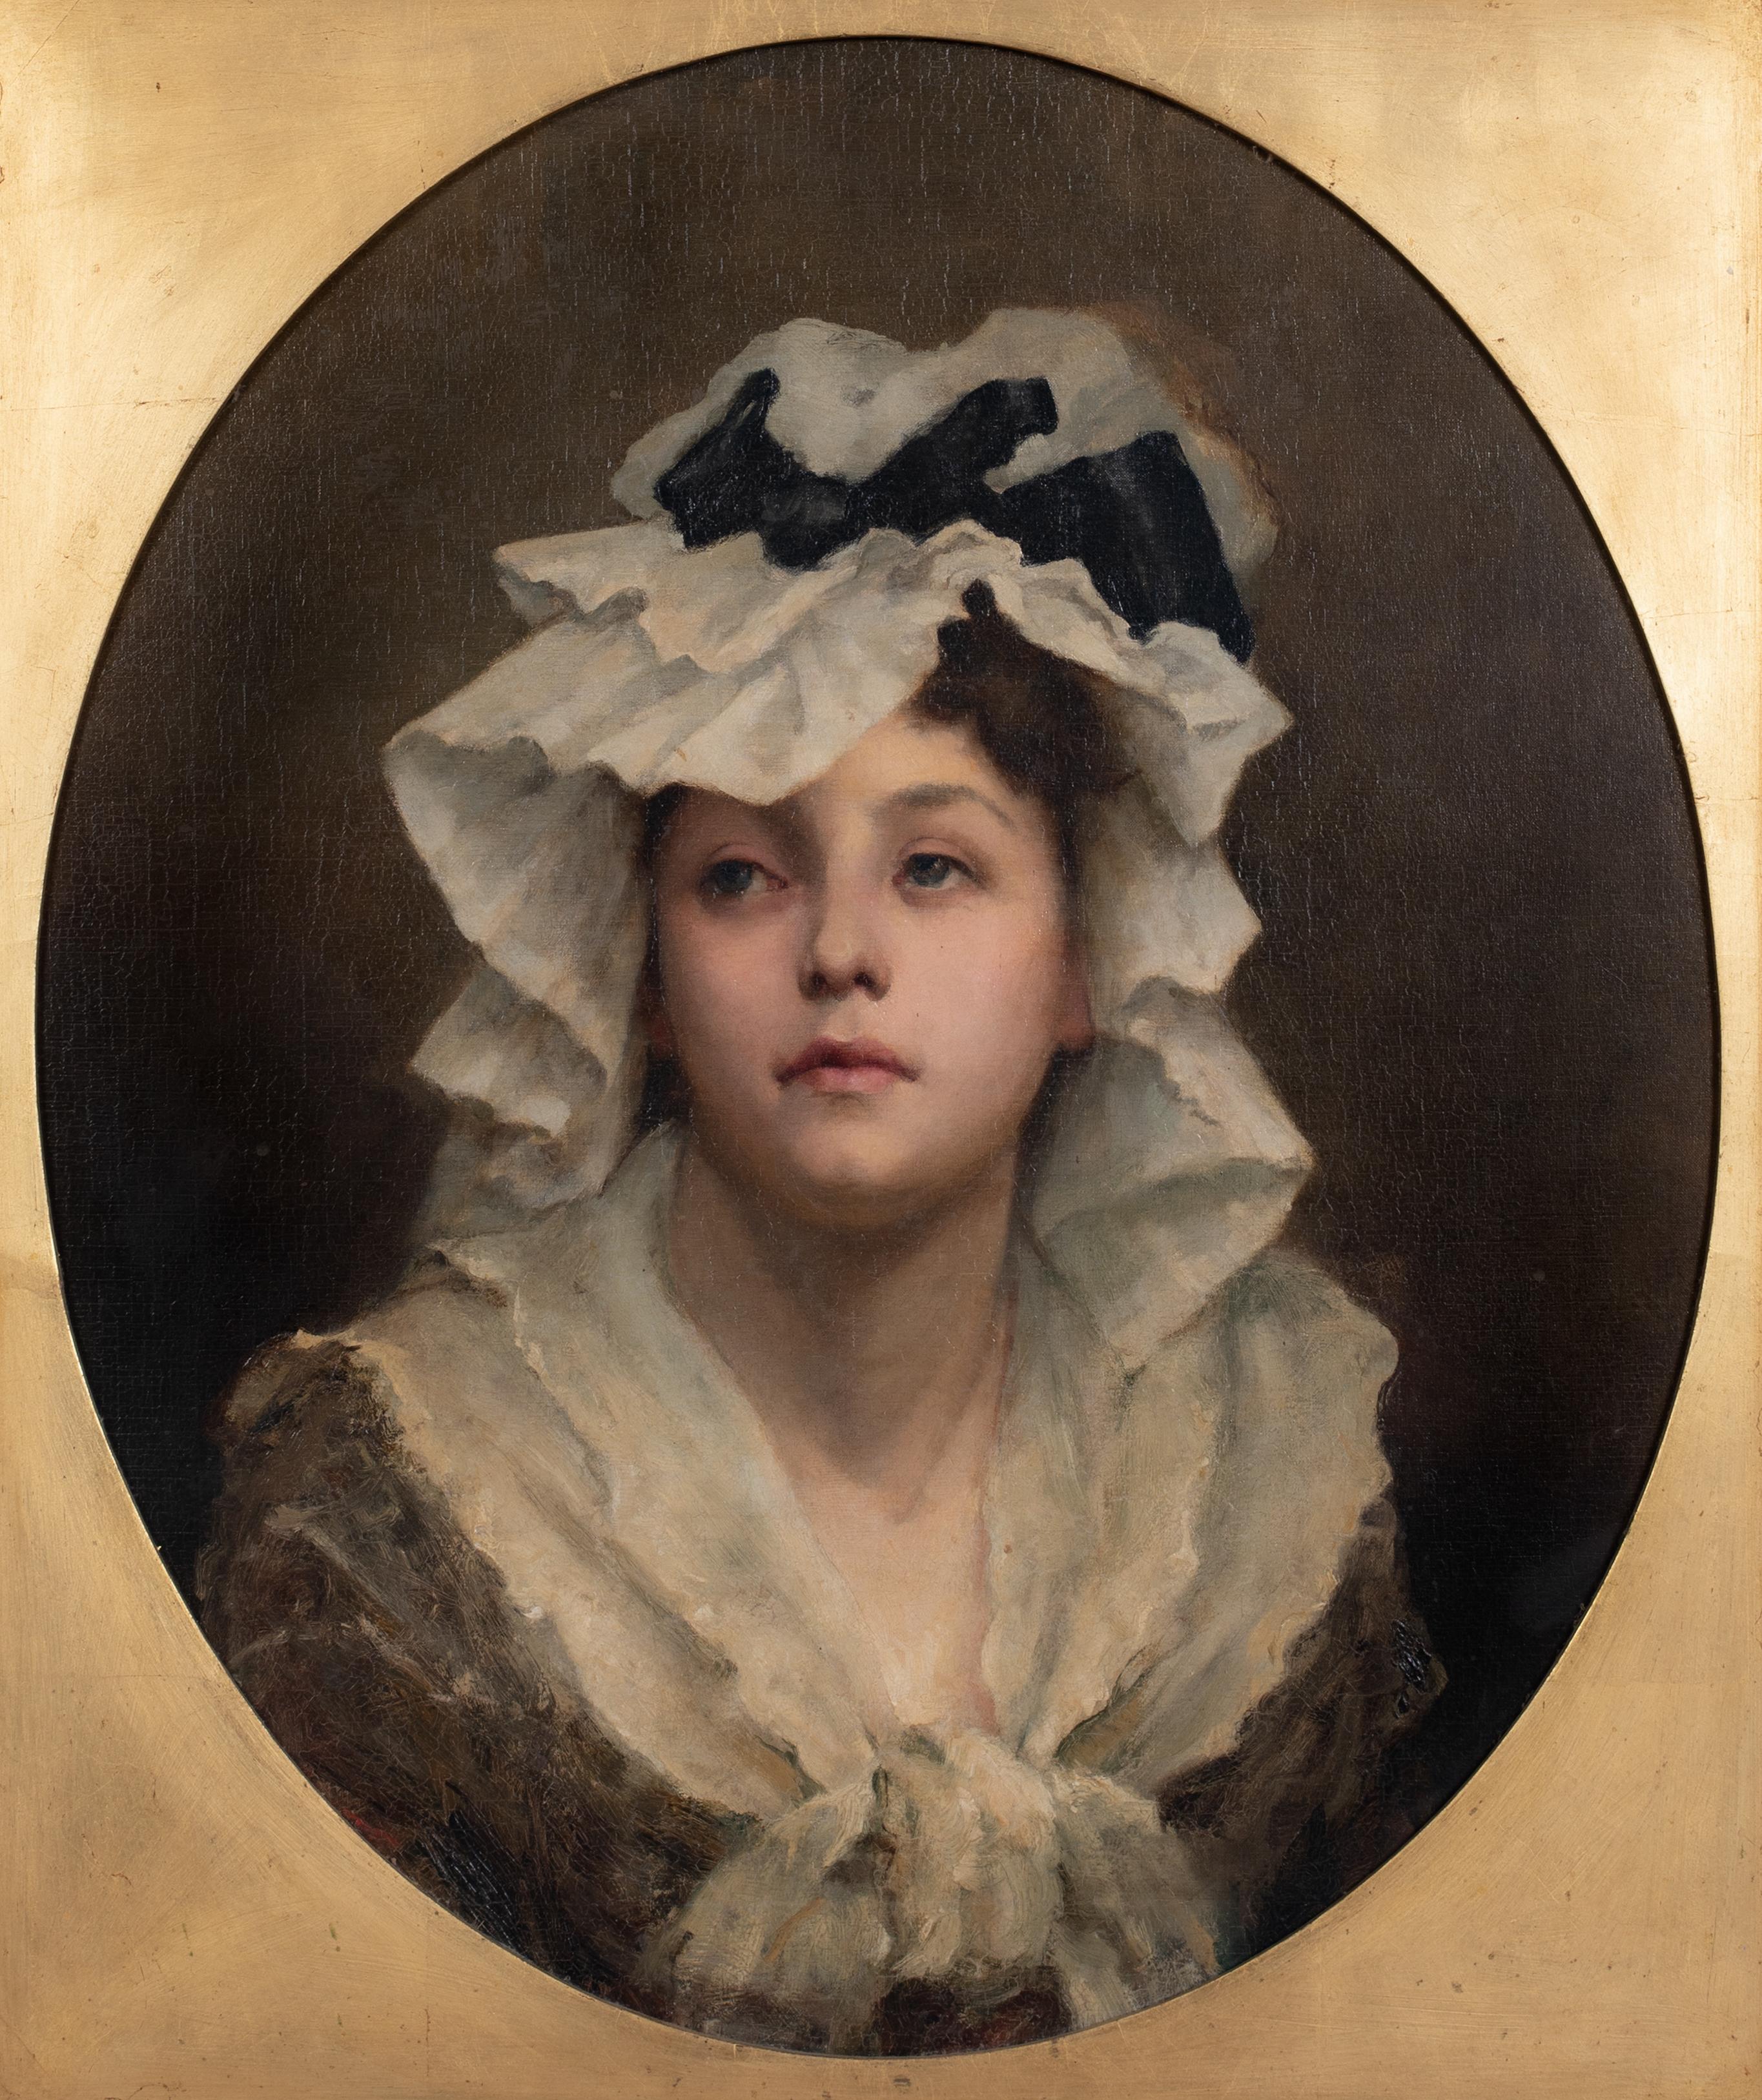 Le bonnet, 19e siècle 

Monogramme G.E.M

Grand portrait du 19ème siècle d'une jeune fille portant un bonnet élaboré, huile sur toile signée G E M. Excellente qualité et condition beau portrait victorien de la jeune fille avec son bonnet. Un